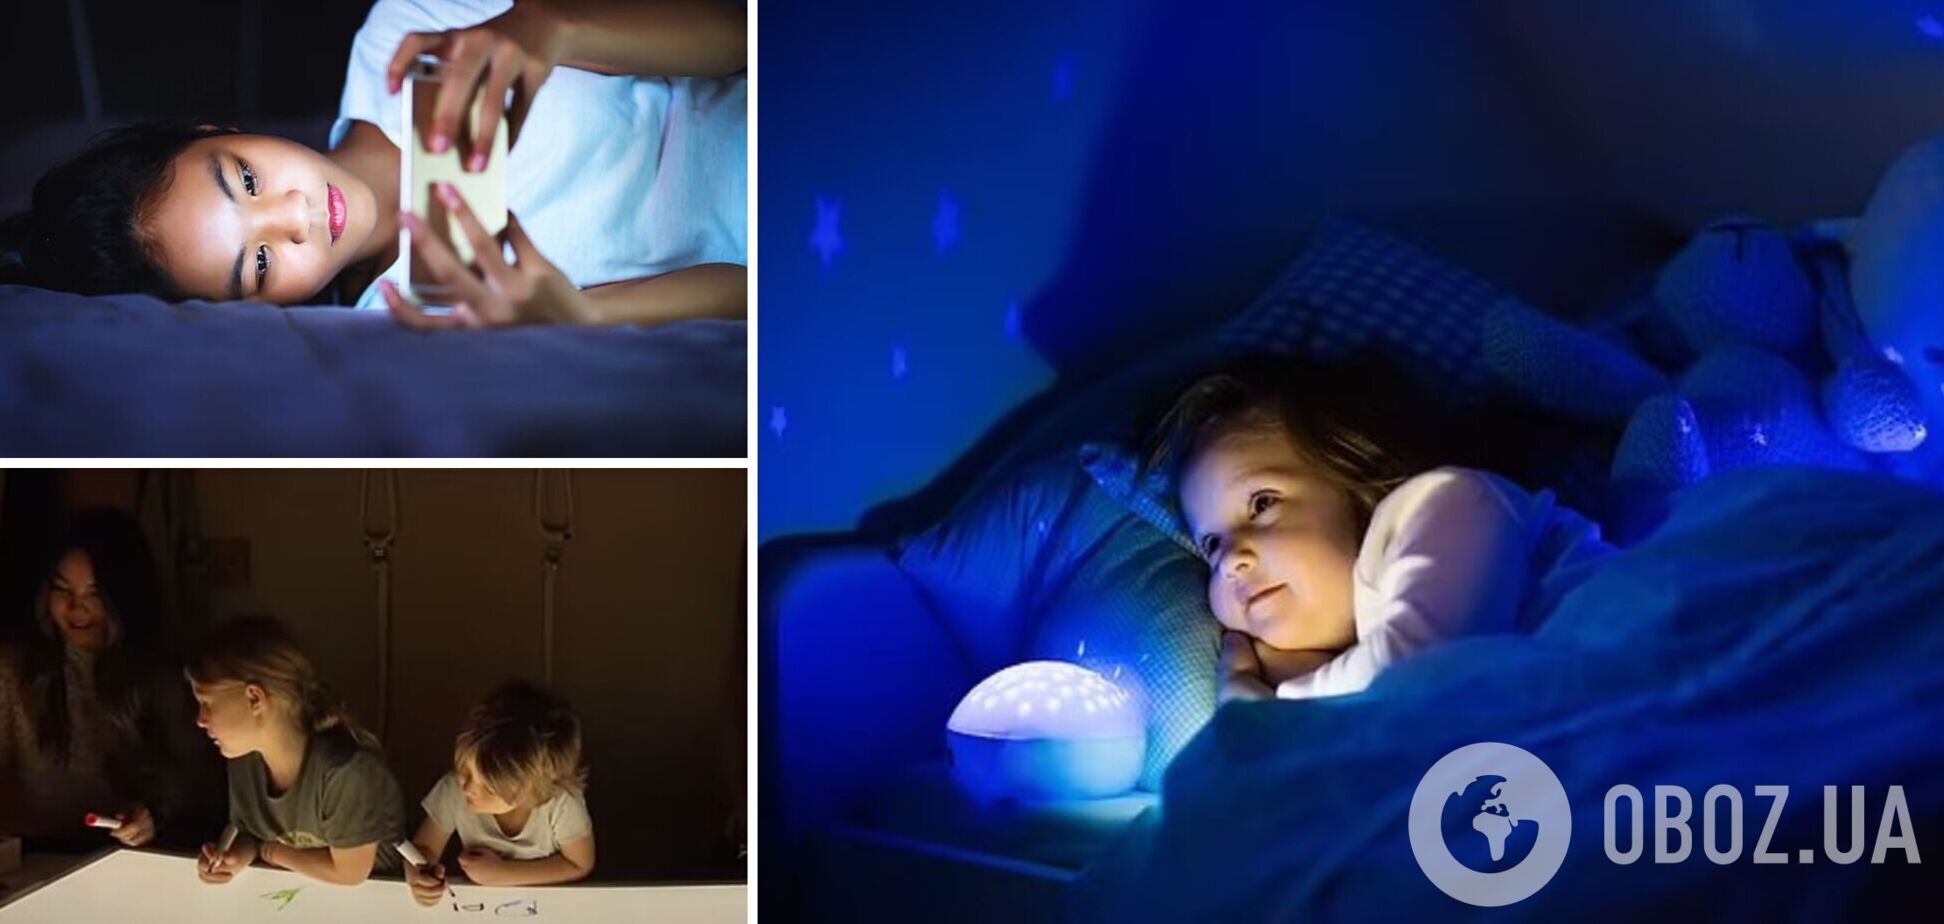 Ночники могут нарушить сон детей: родителей призвали отказаться от популярных игрушек